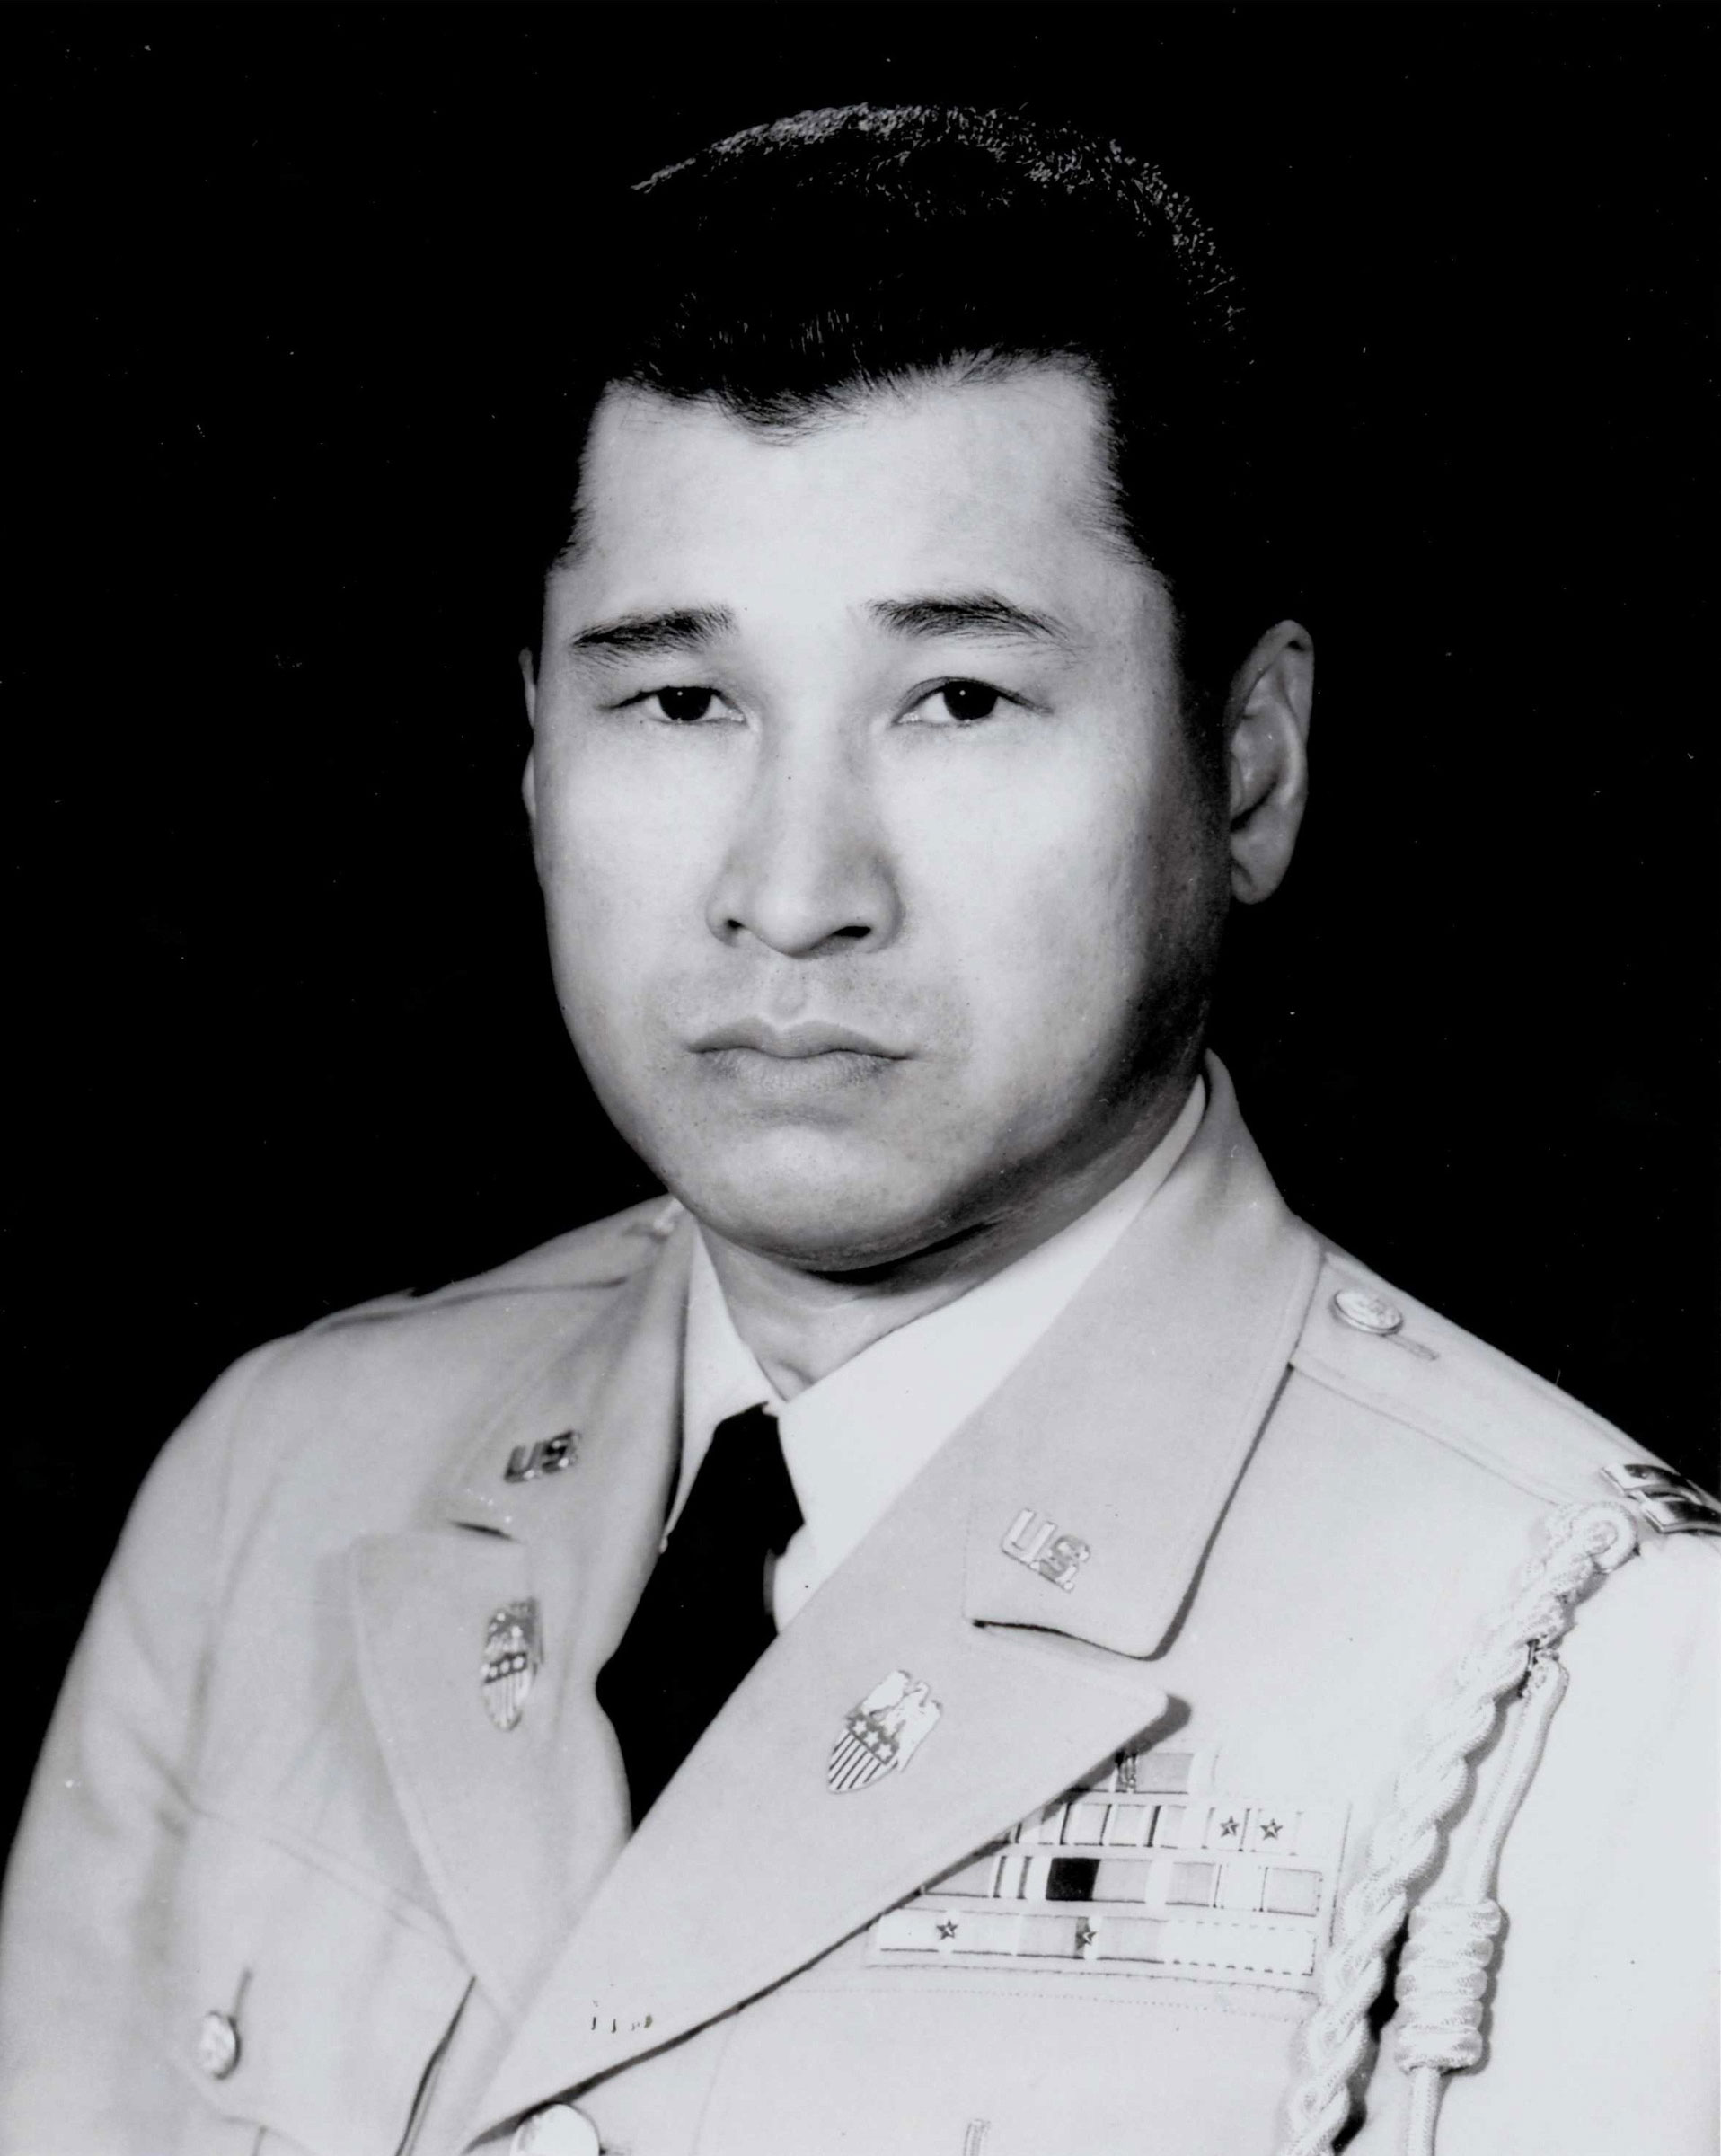 Lt. Tom Sakamoto (Family photograph)